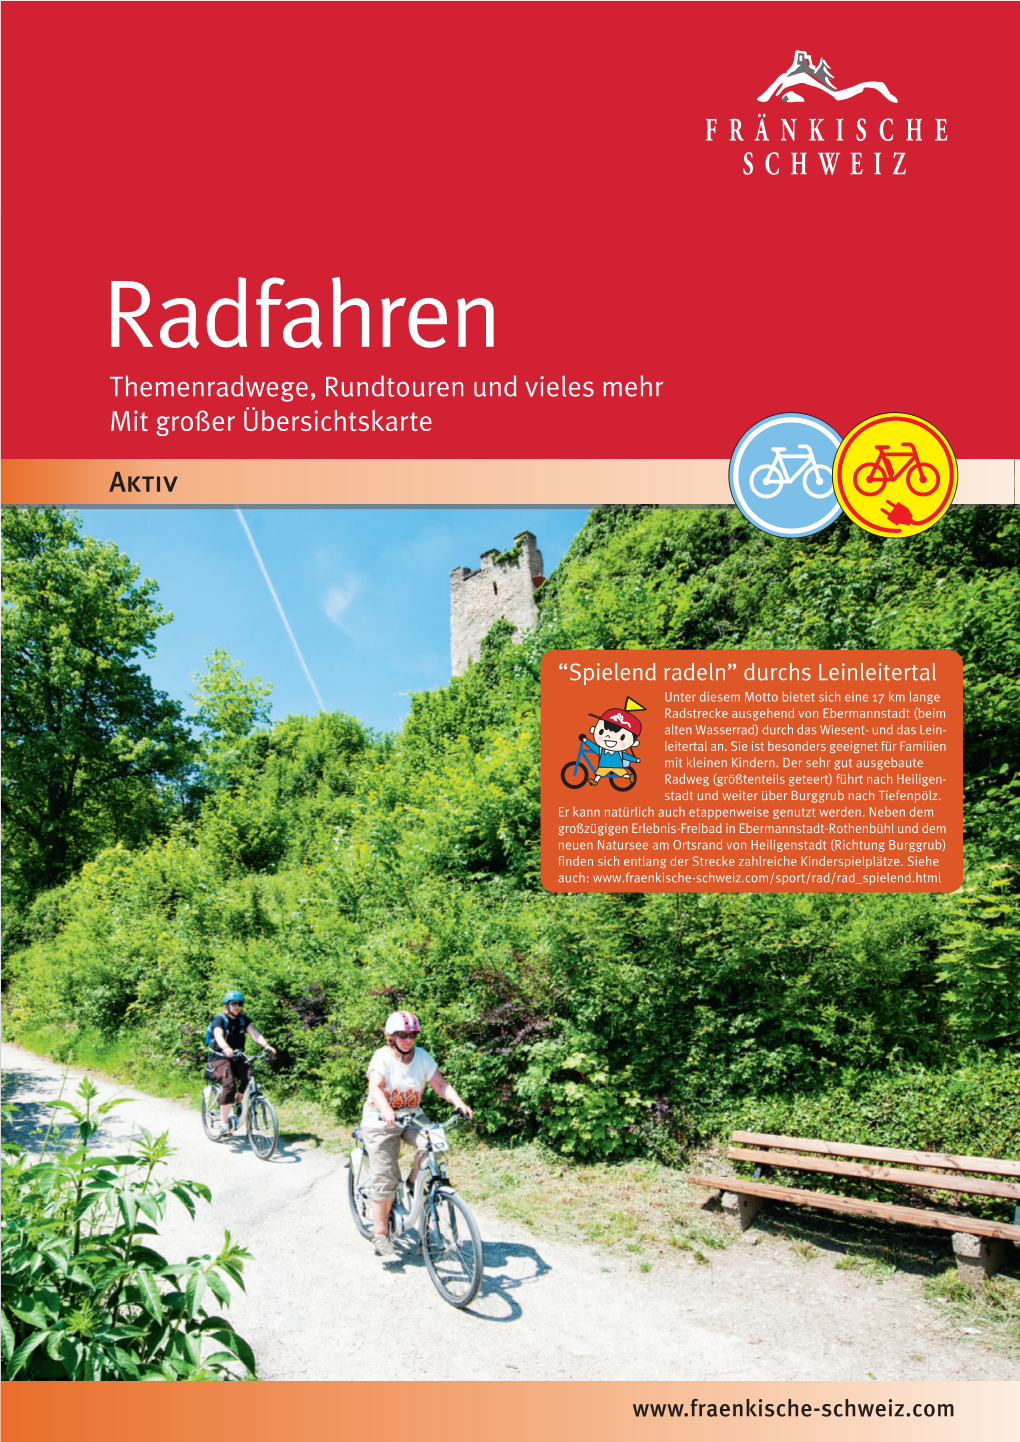 Radtouren in Der Fränkische Schweiz